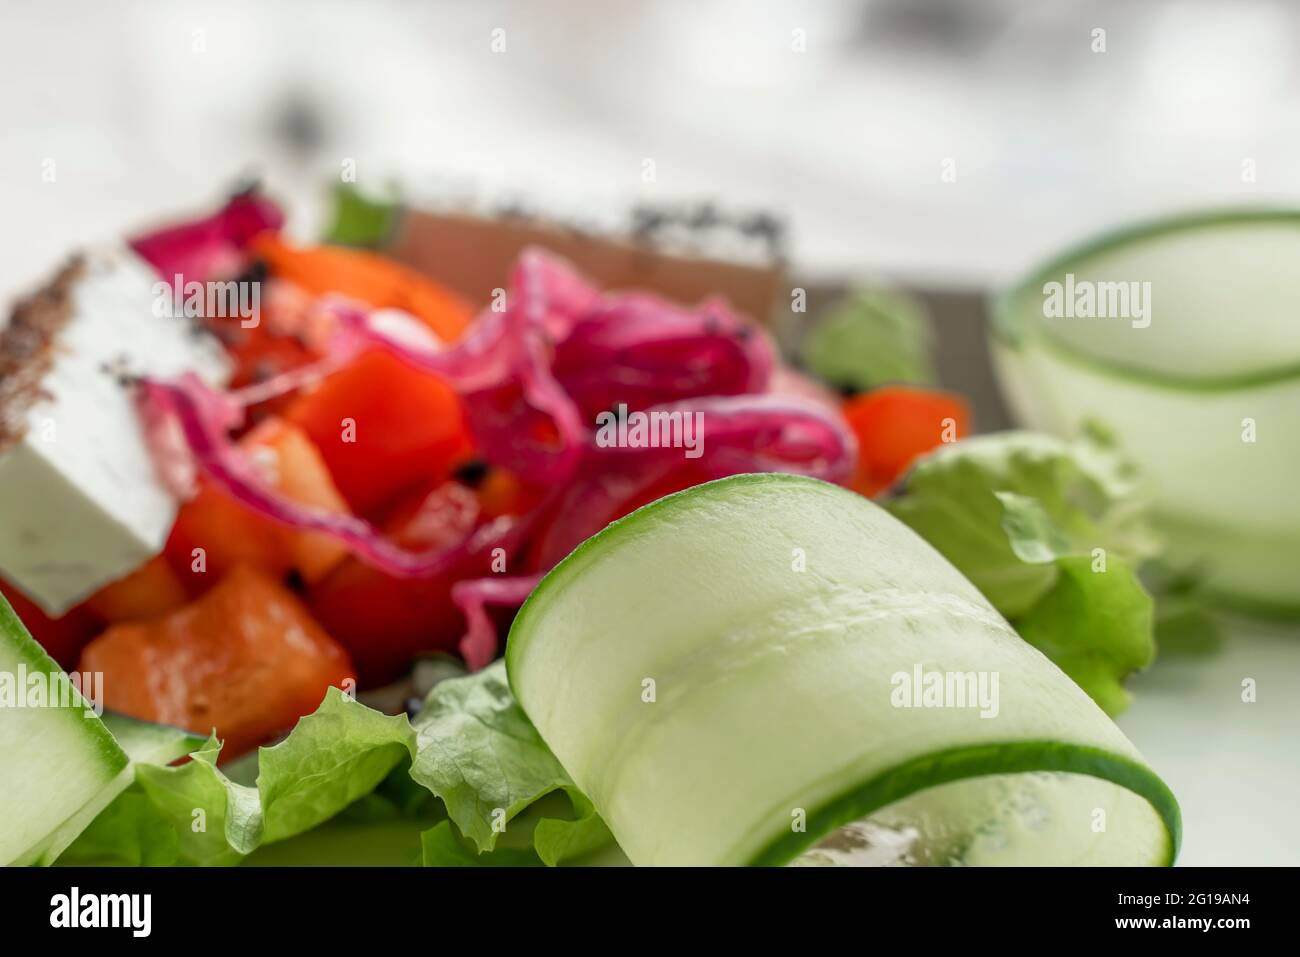 Piatto di insalata fresca. Insalata greca con verdure fresche, formaggio feta e olive kalamata. Cibo sano. Foto Stock